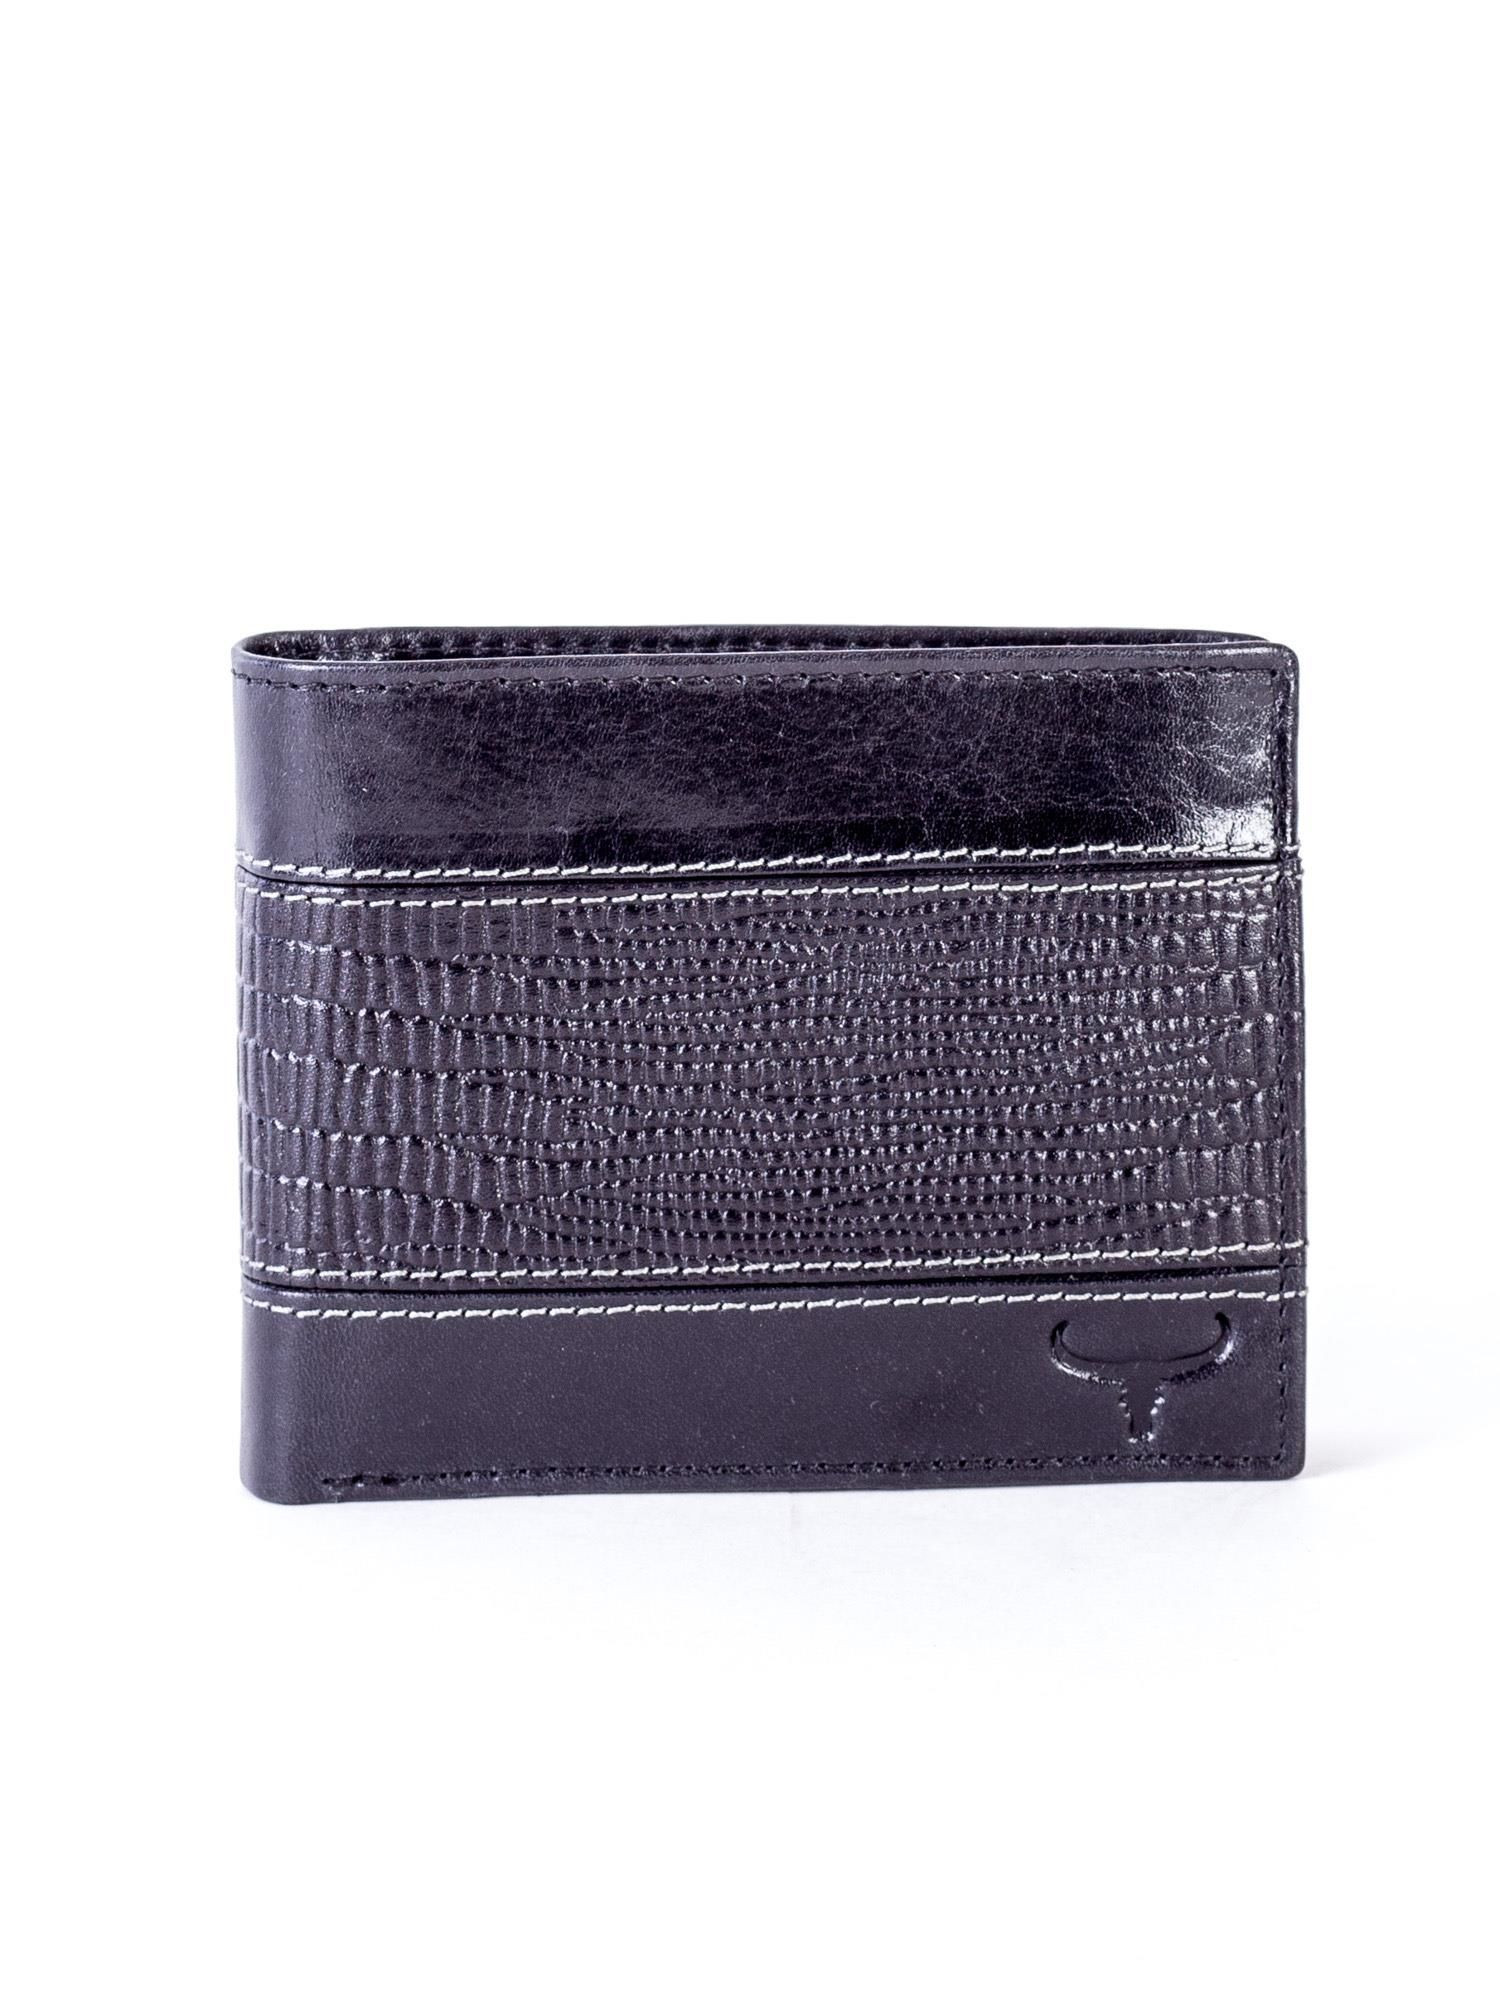 CE PR N7 VTC peněženka.91 černá jedna velikost